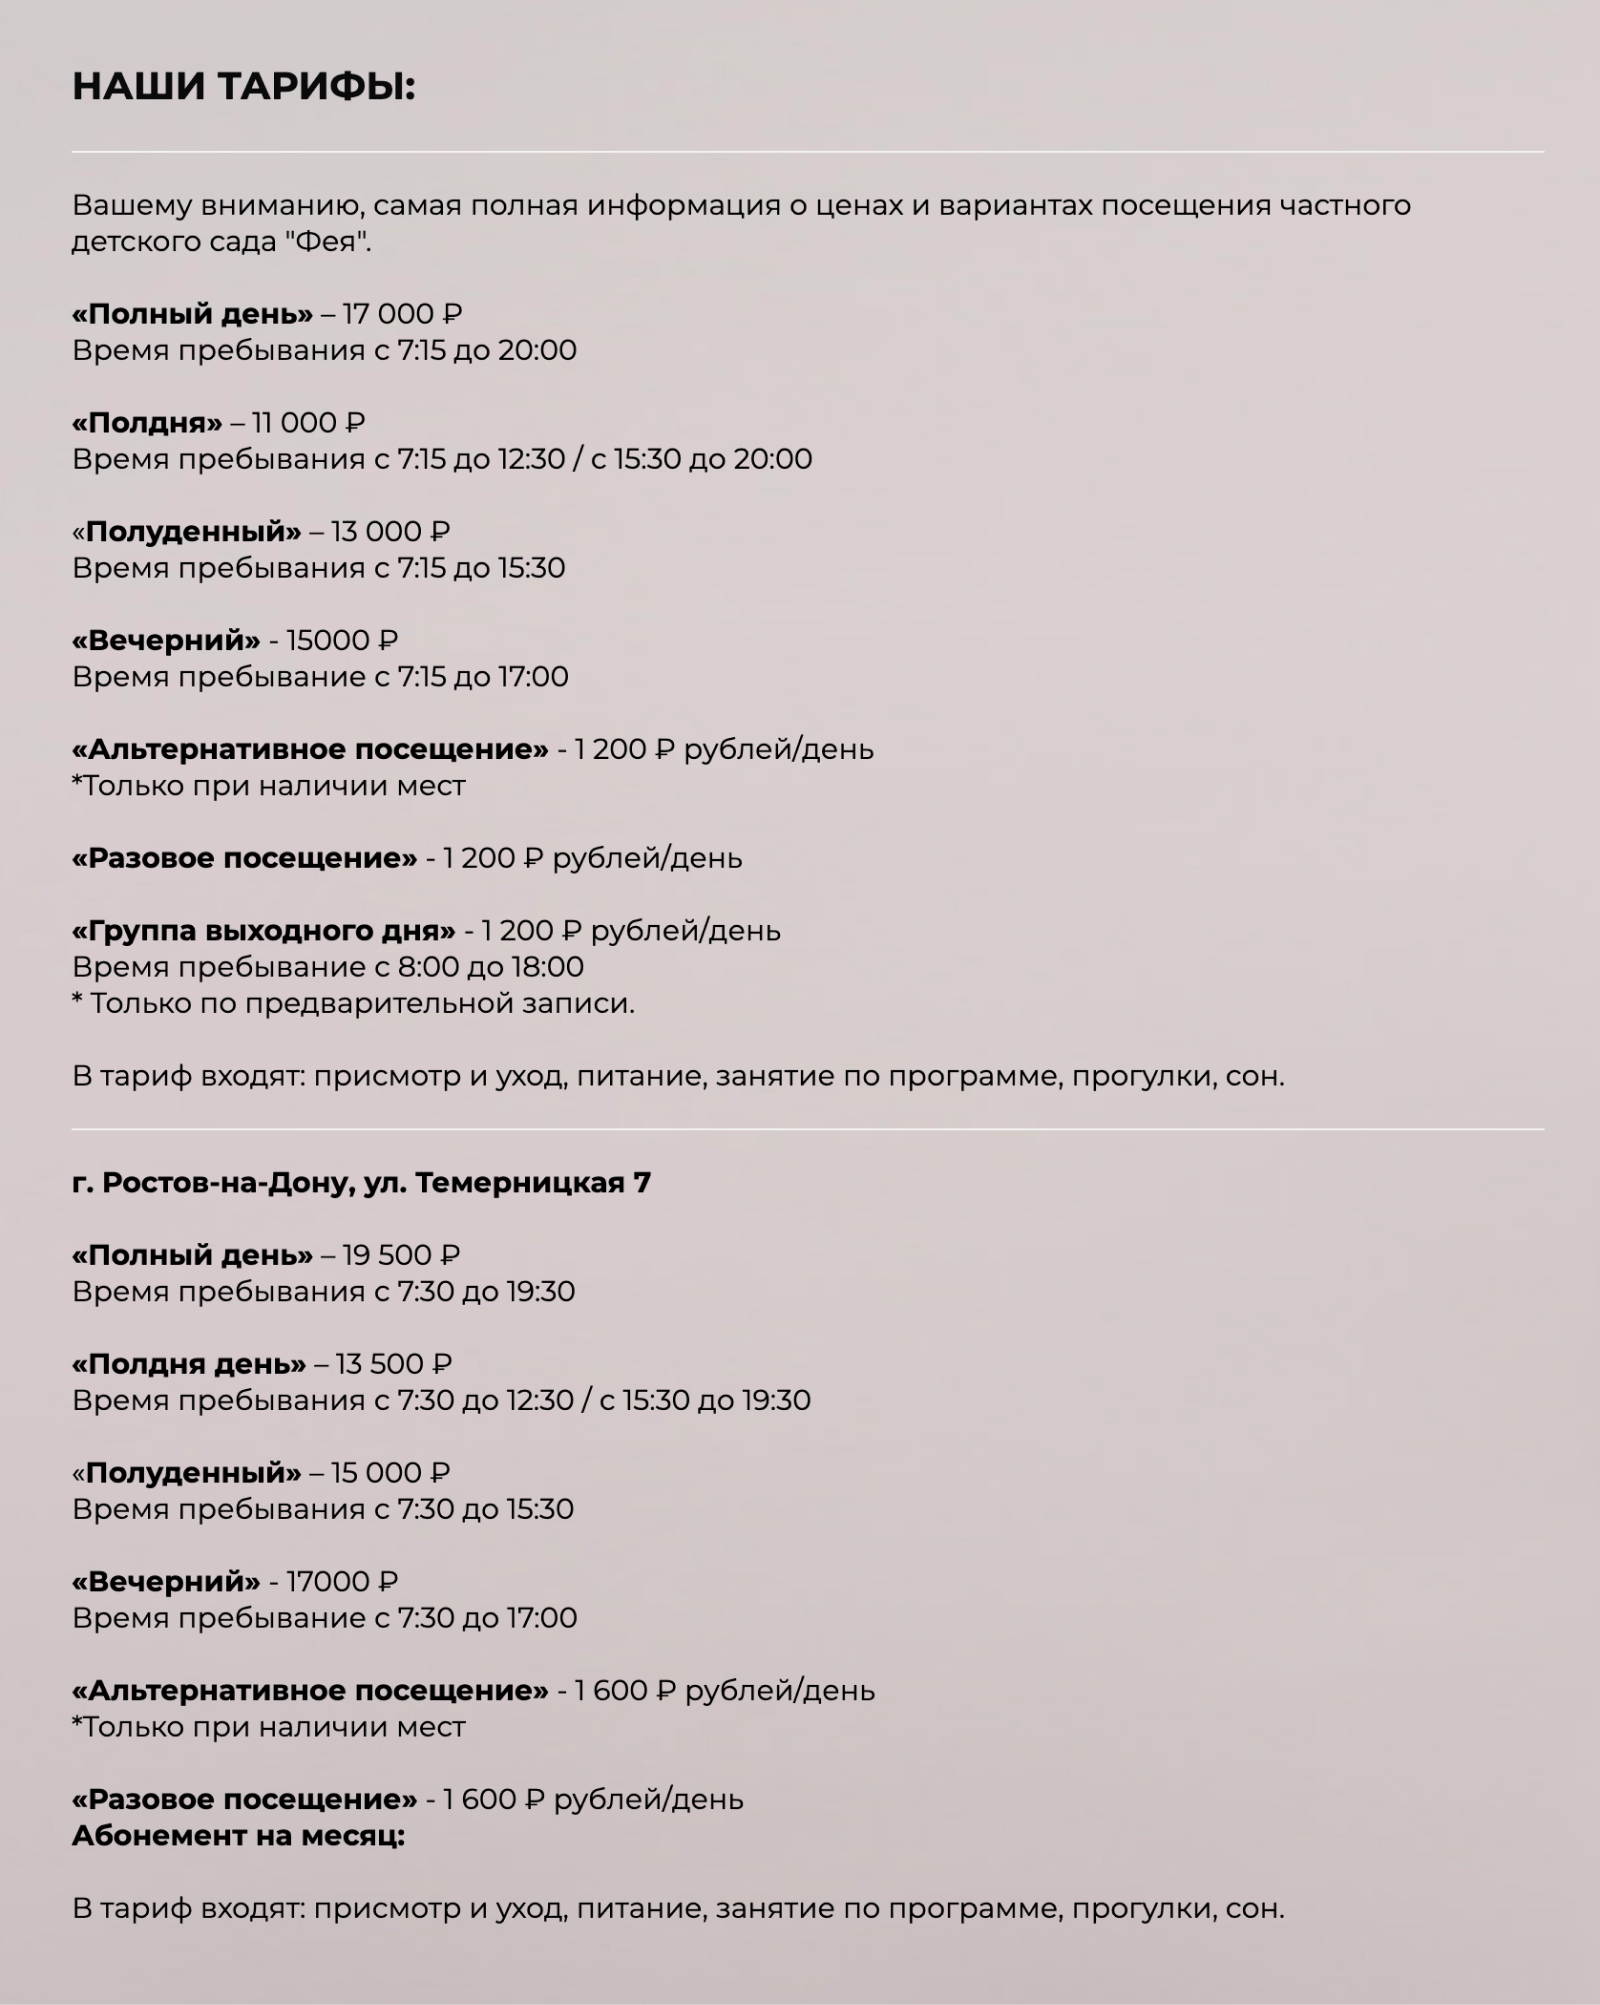 Расценки частного детского сада «Фея». Источник: dsfeya.ru